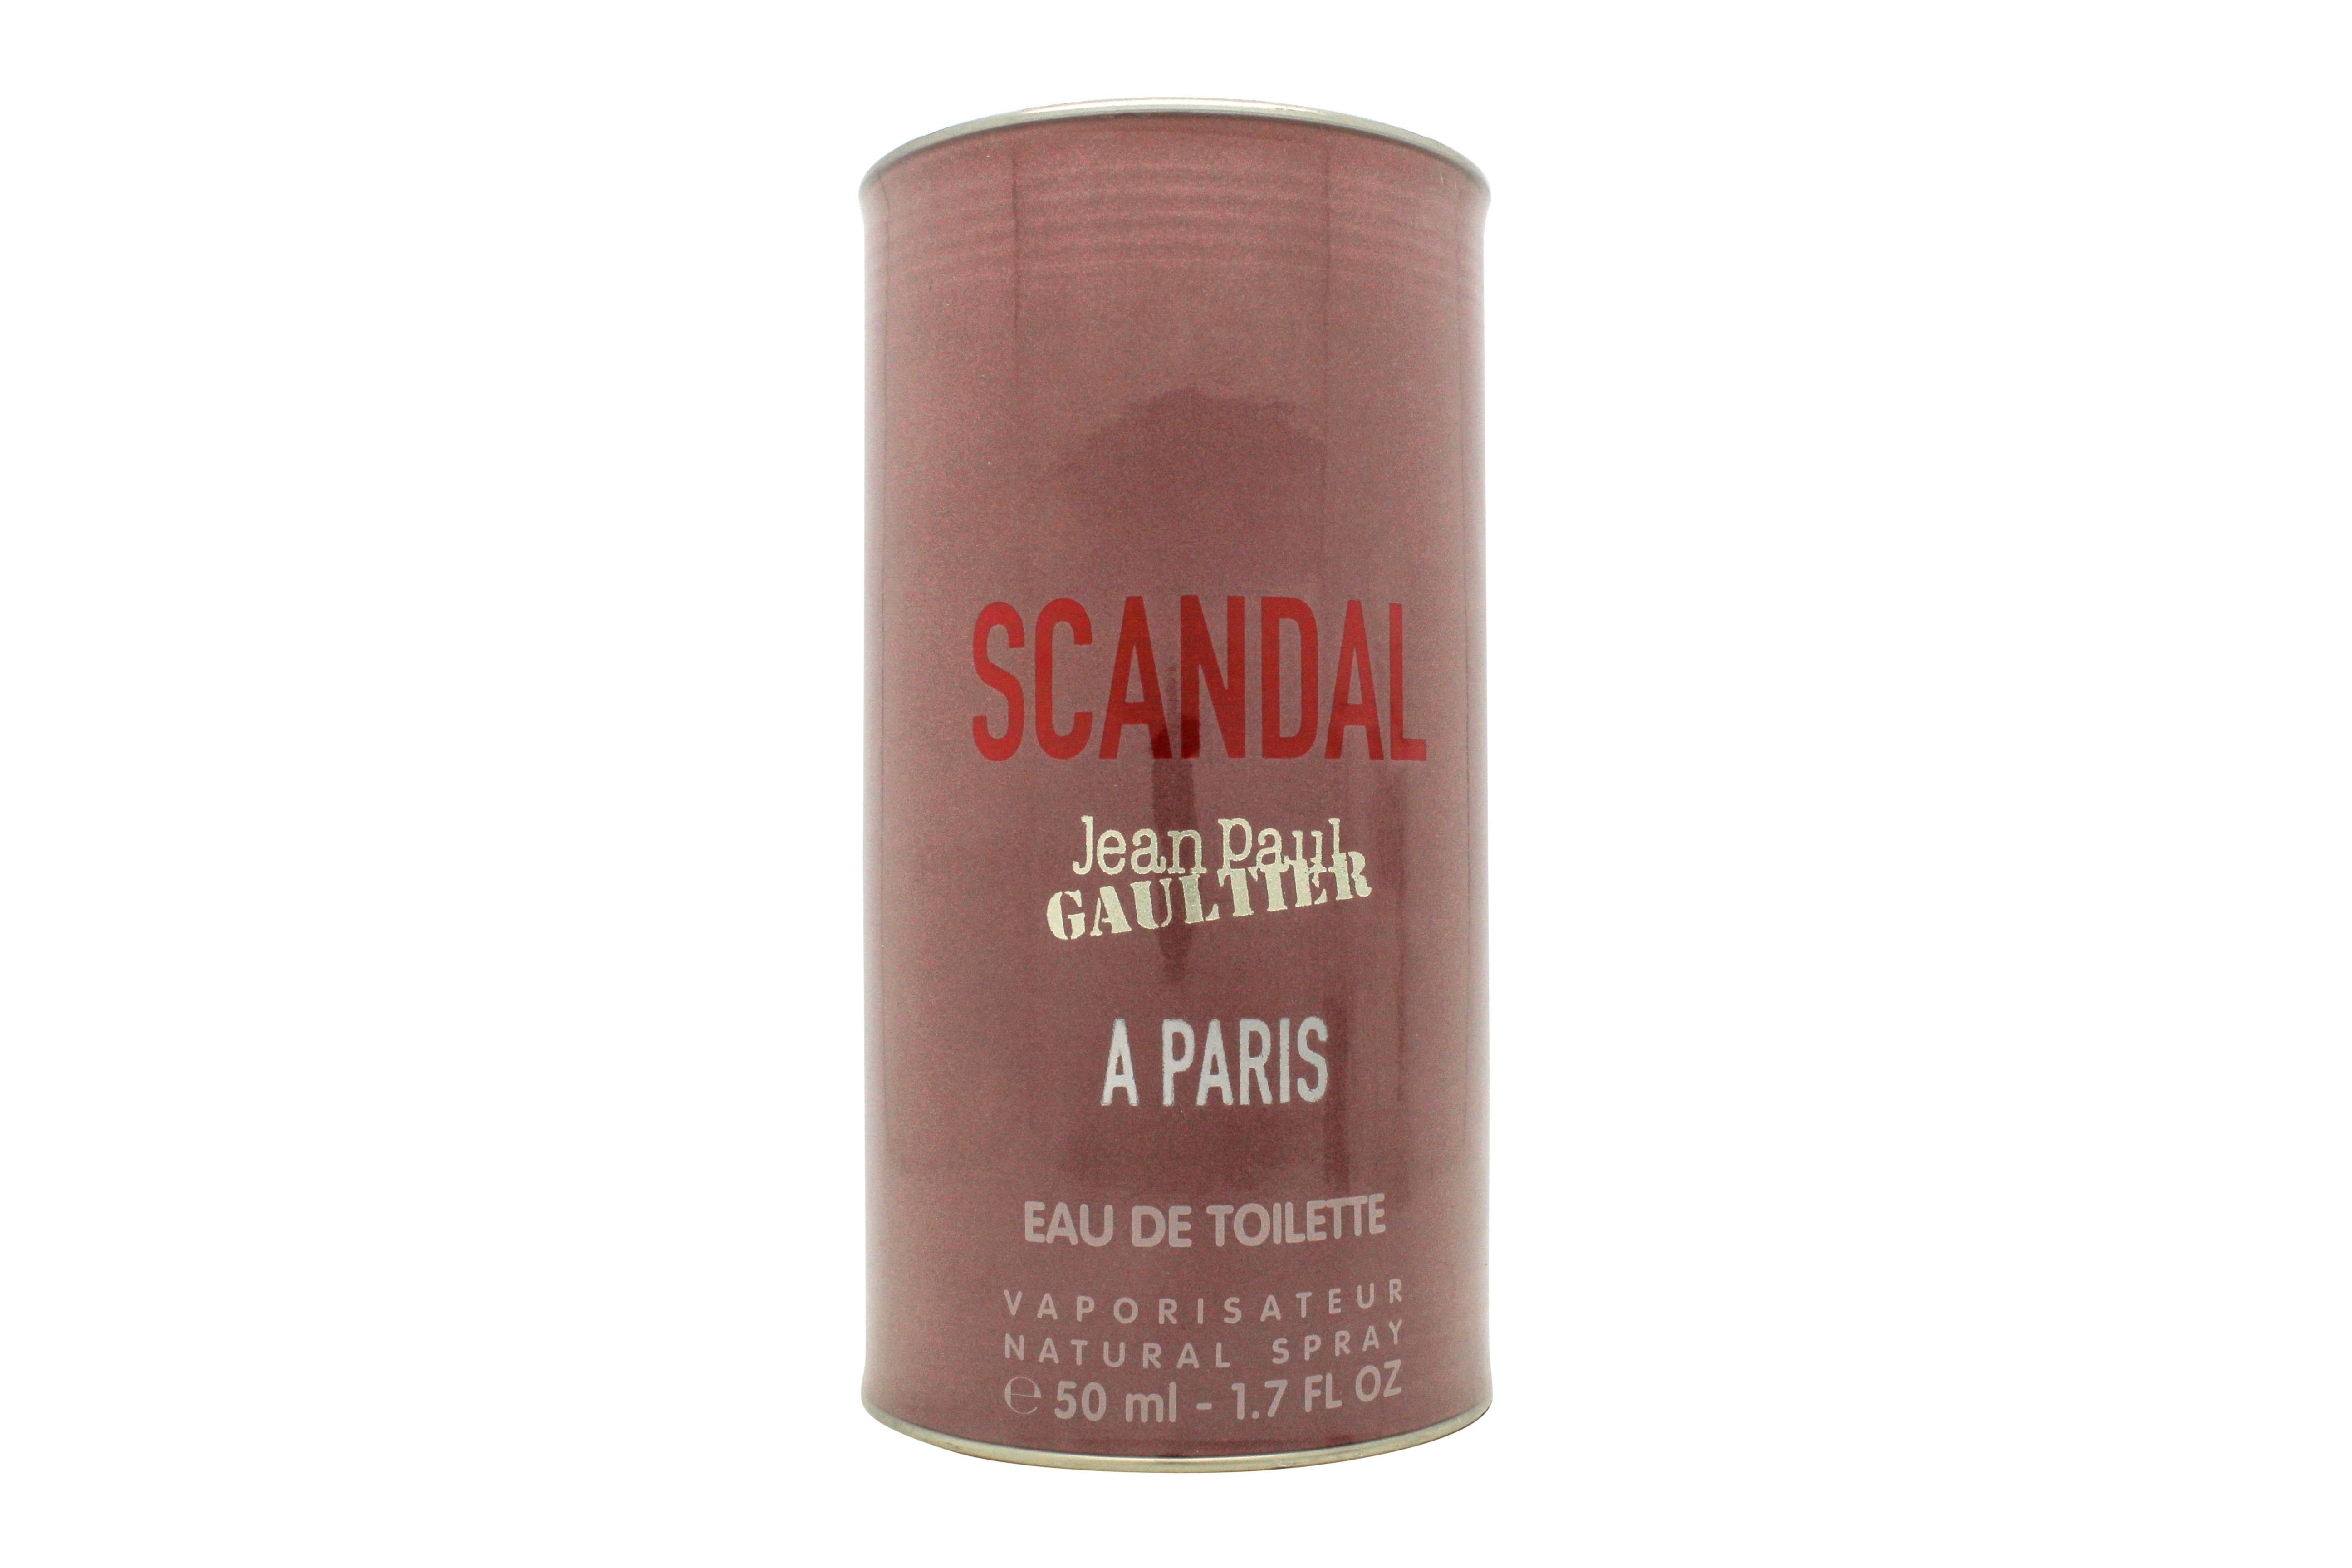 Jean Paul Gaultier Scandal A Paris Eau de Toilette 50ml Spray